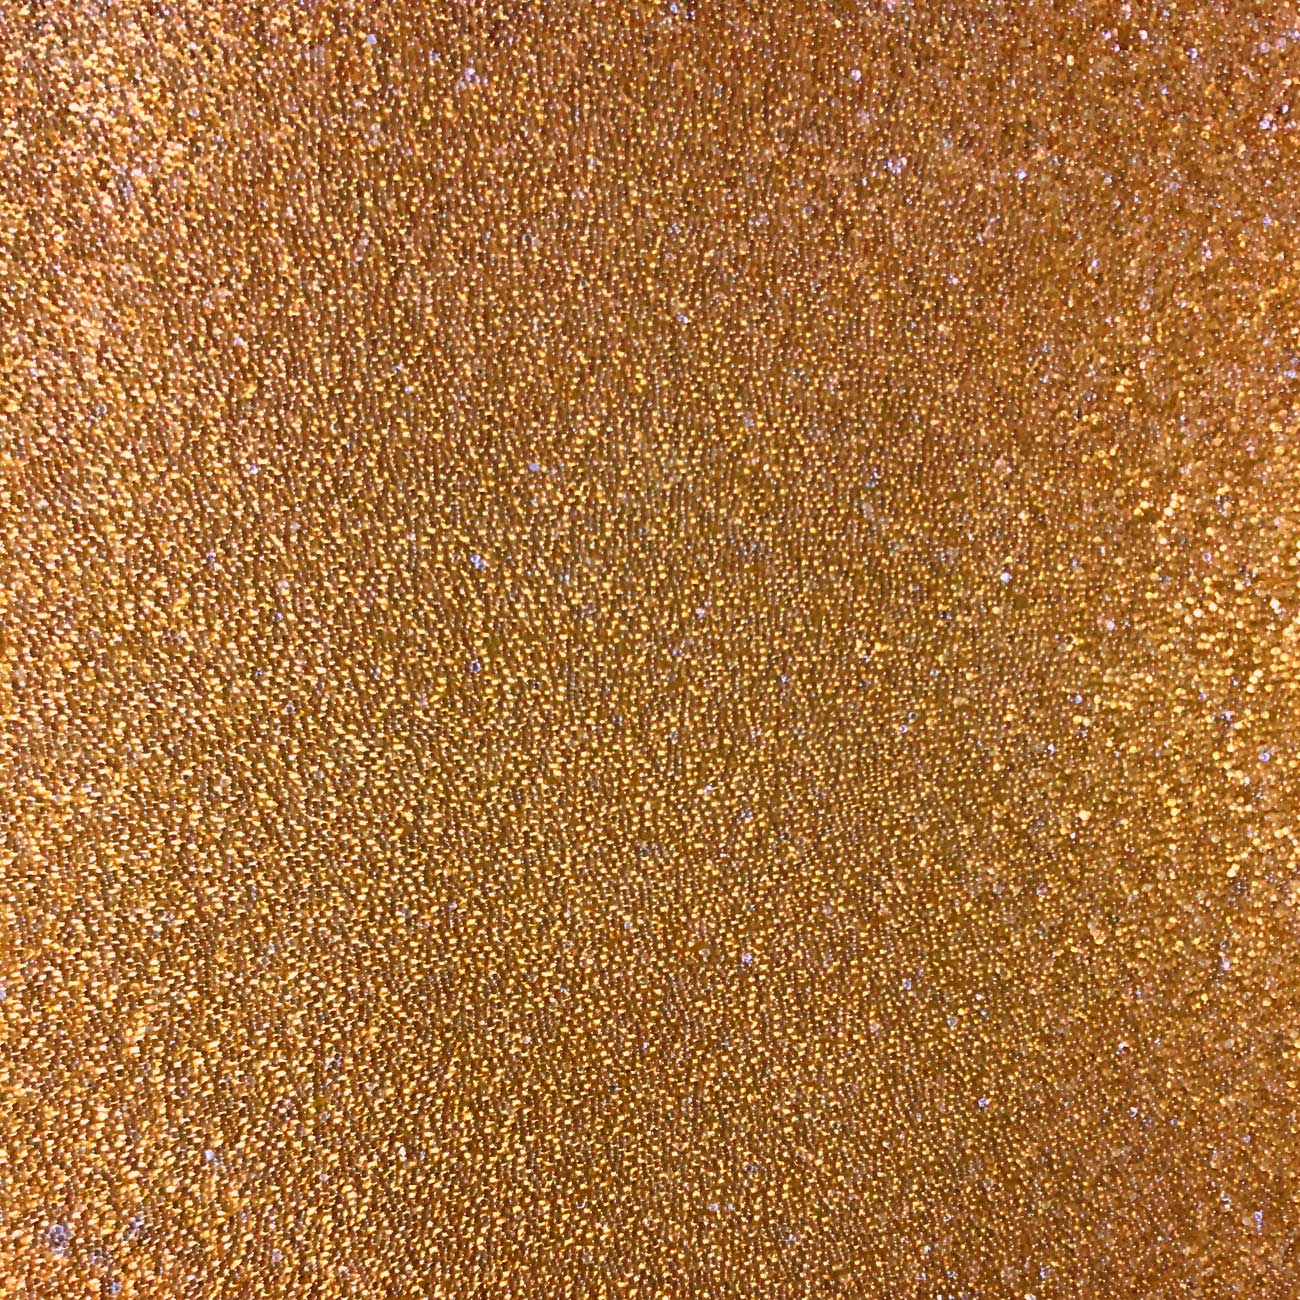 Wandverkleidung CBS13 CRYSTAL Uni handgearbeitet mit echten Glasperlen gold-braun